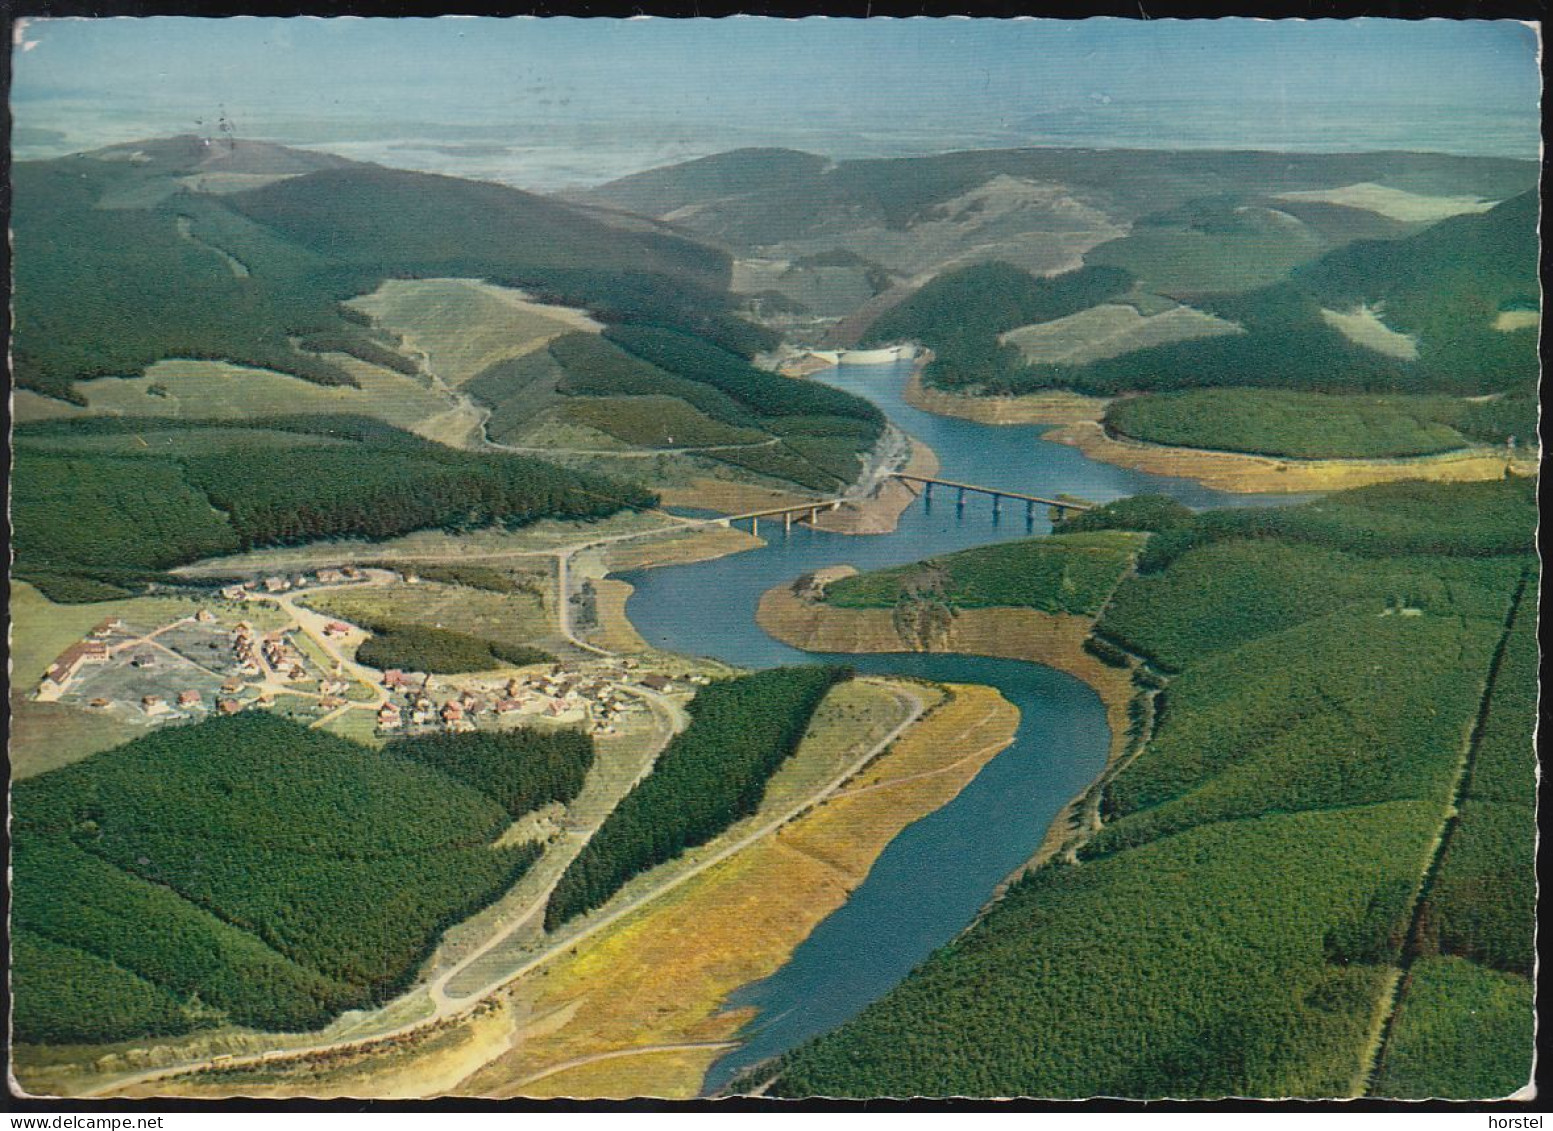 D-38707 Schulenberg - Okertalsperre Im Oberharz - Luftbild Mit Brücken - Aerial View - Nice Stamp - Altenau